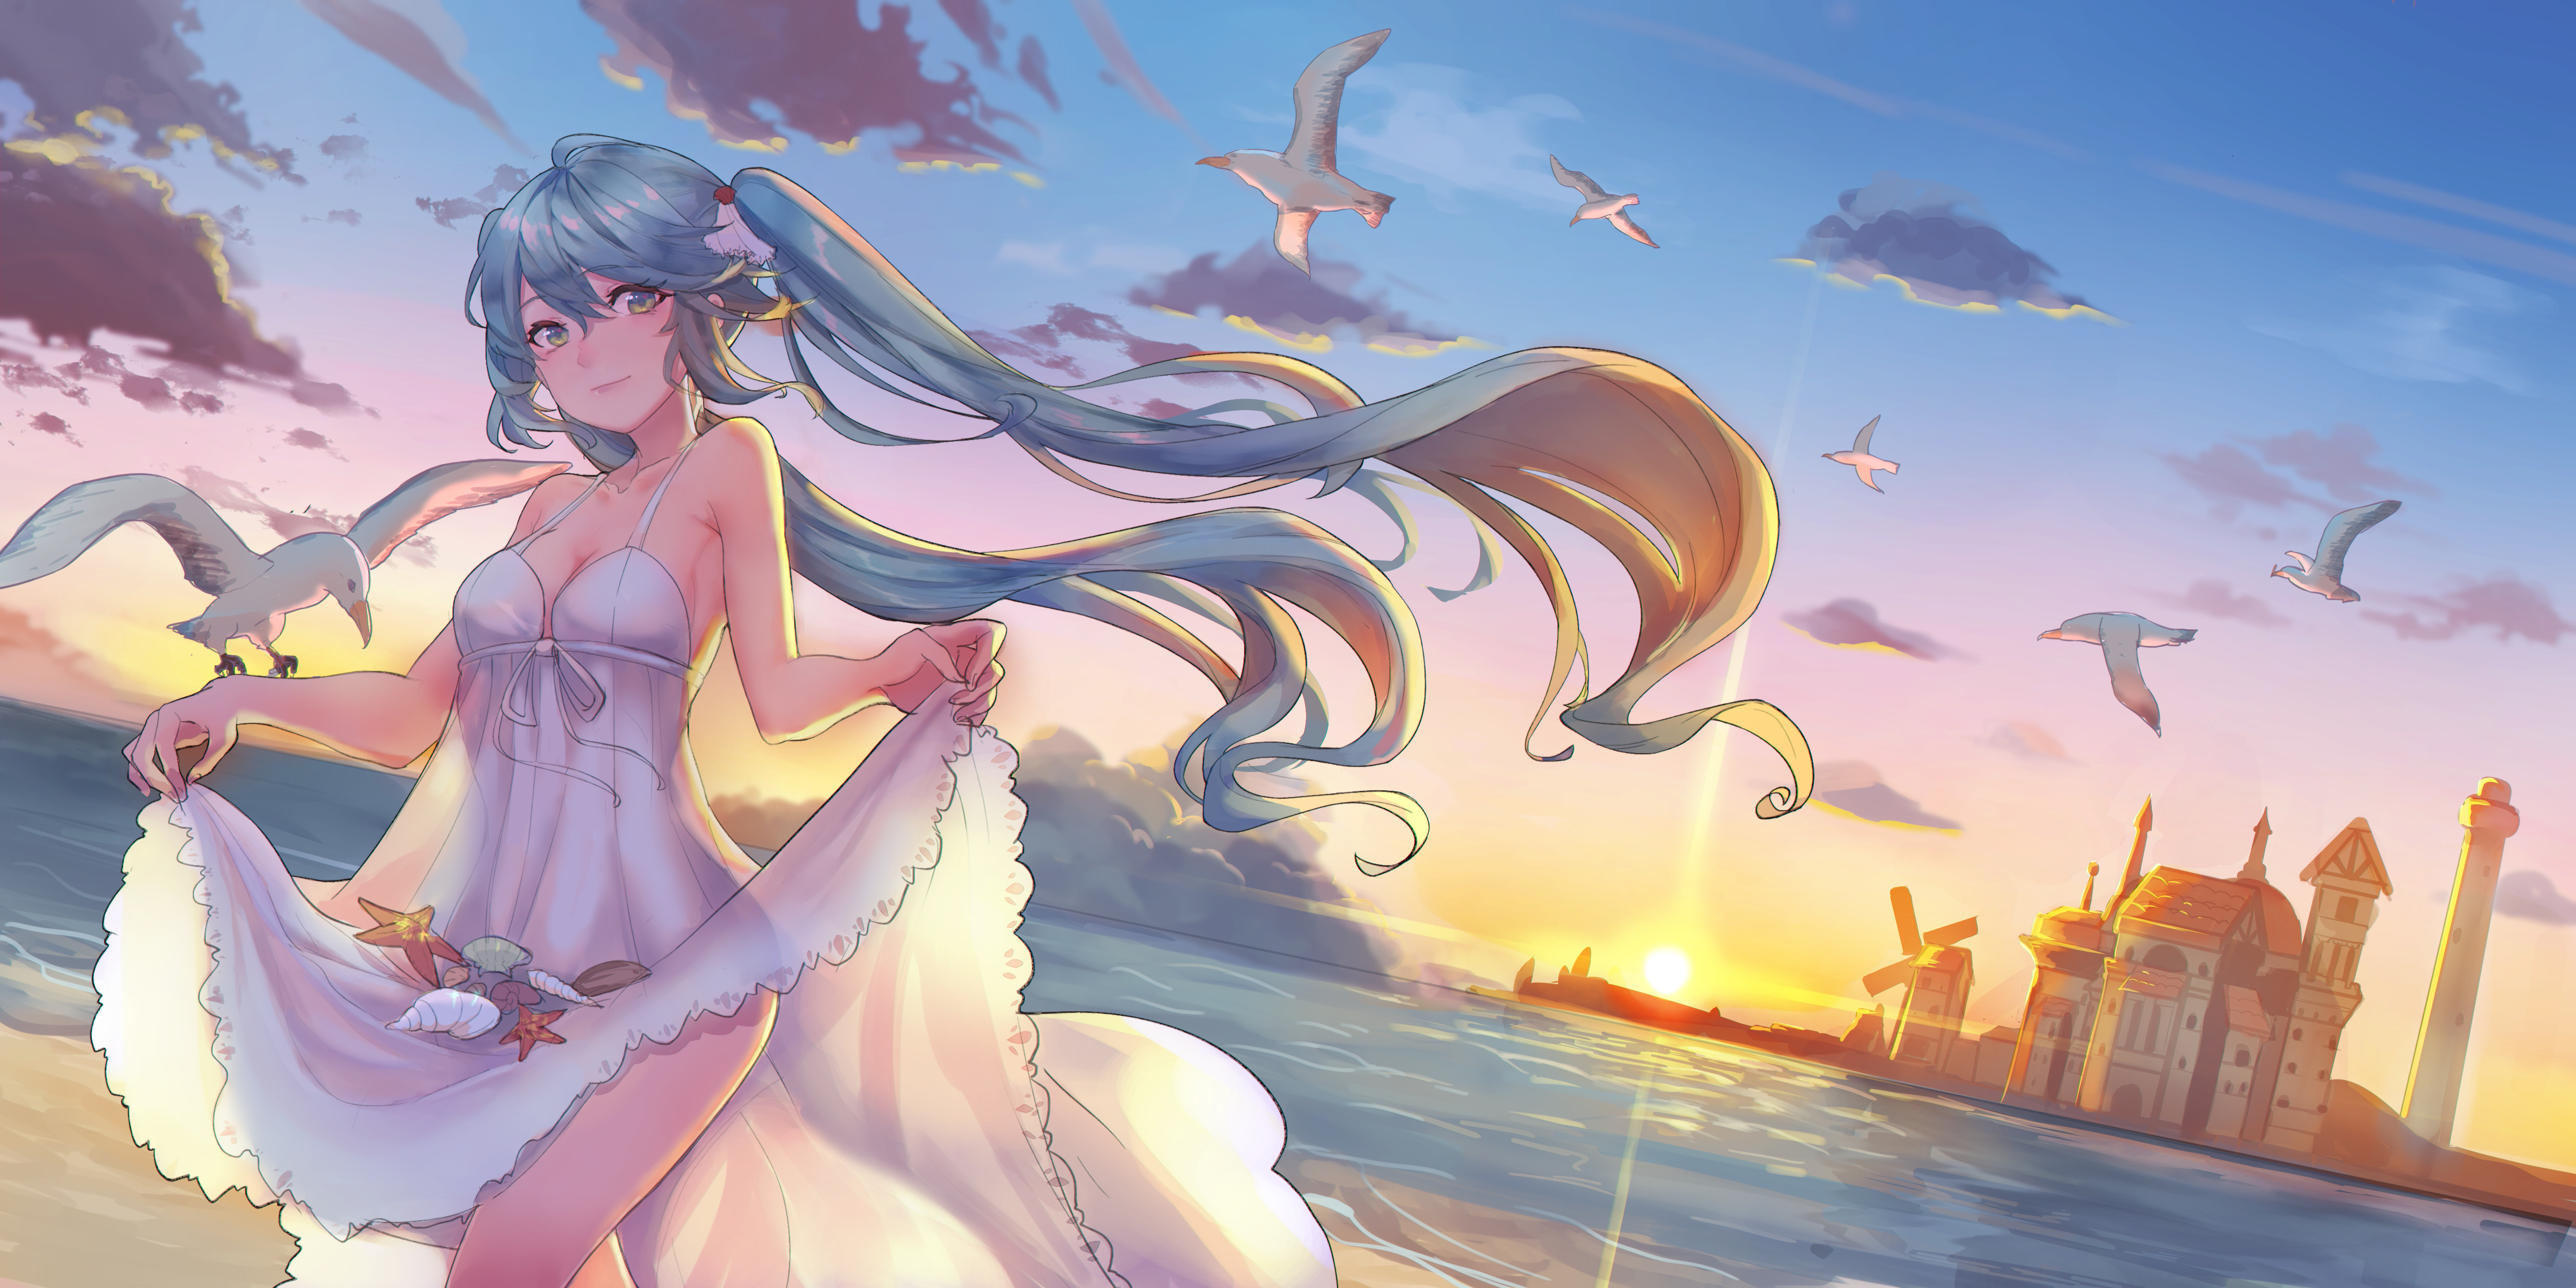 Anime Girls Vocaloid Hatsune Miku Ice Artist Smiling Lifting Dress Sun Dress Beach 4917x2459